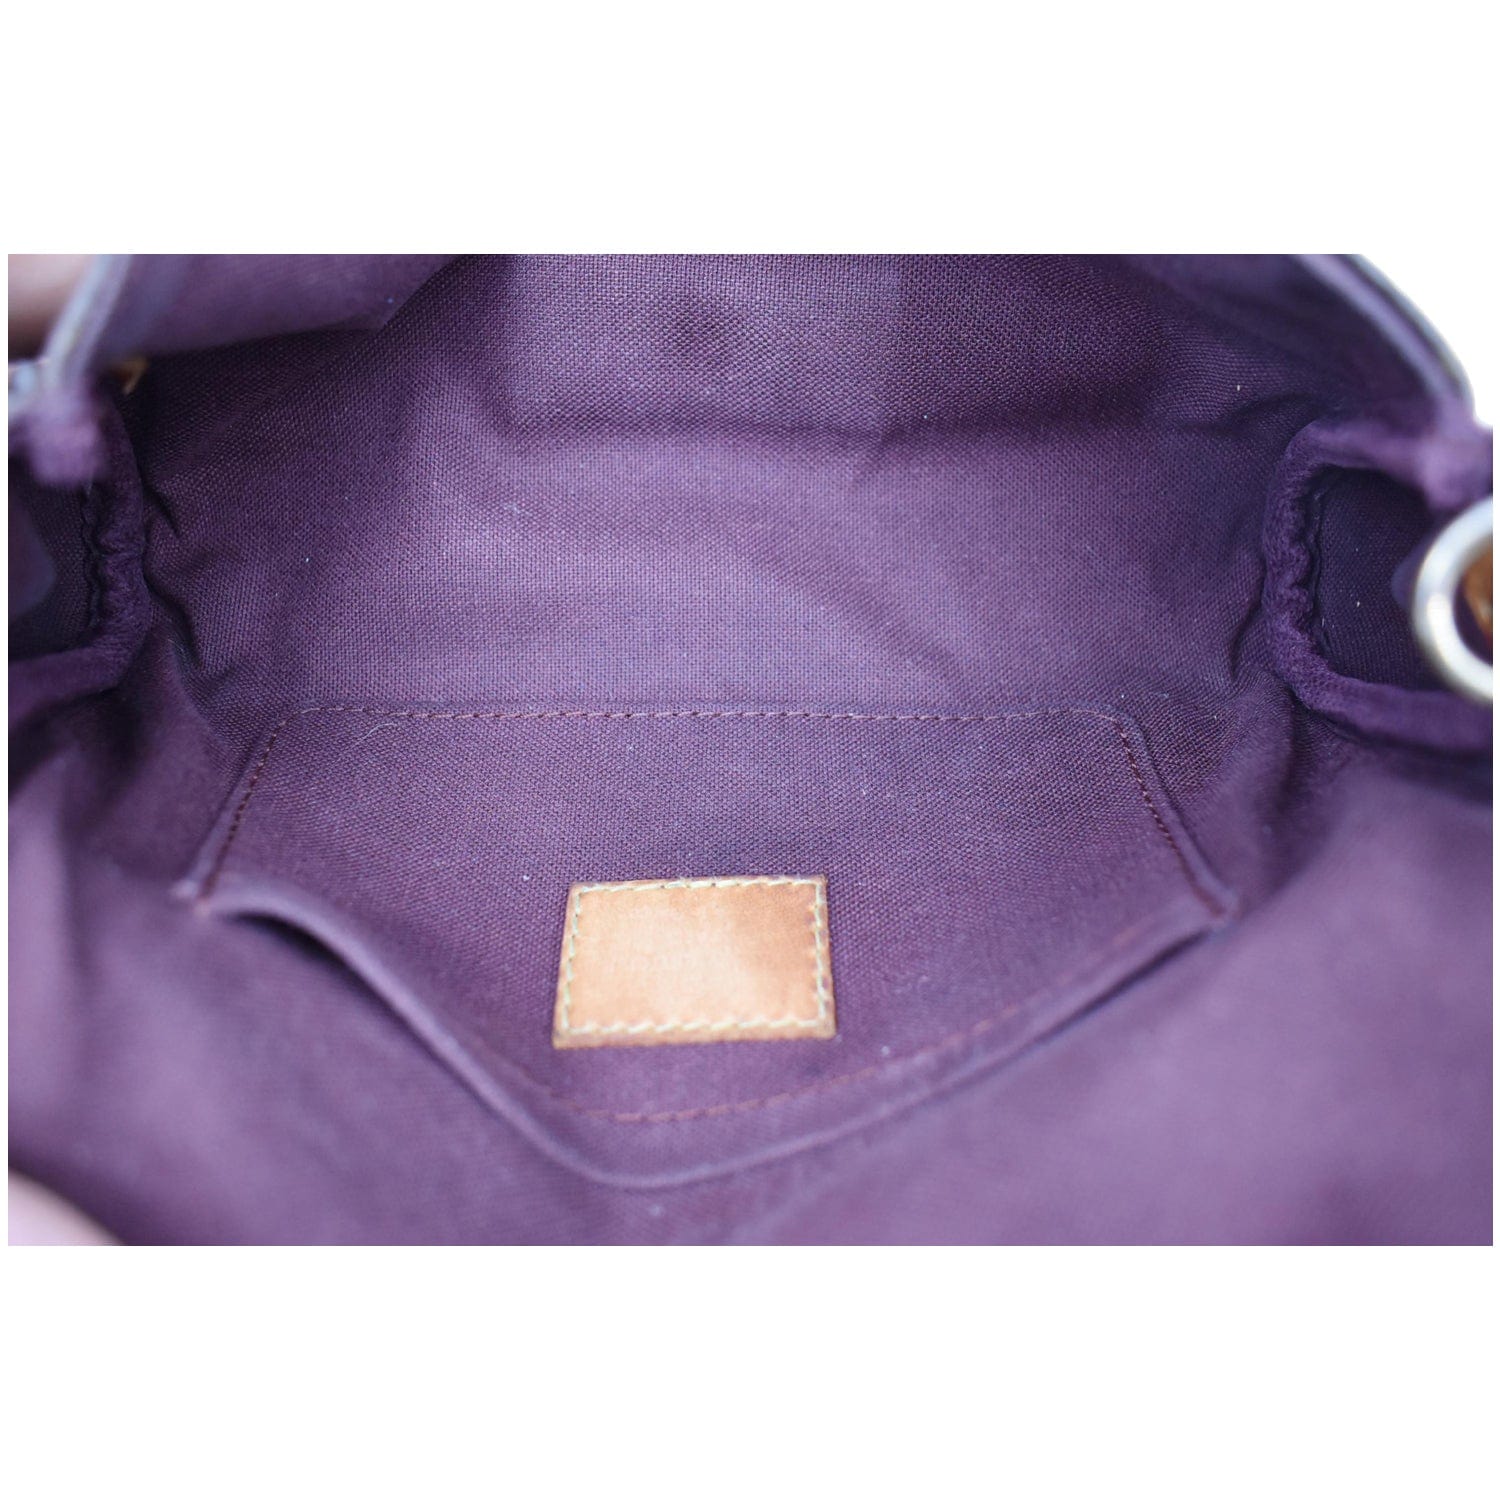 Cloth clutch bag Louis Vuitton Brown in Cloth - 24510589